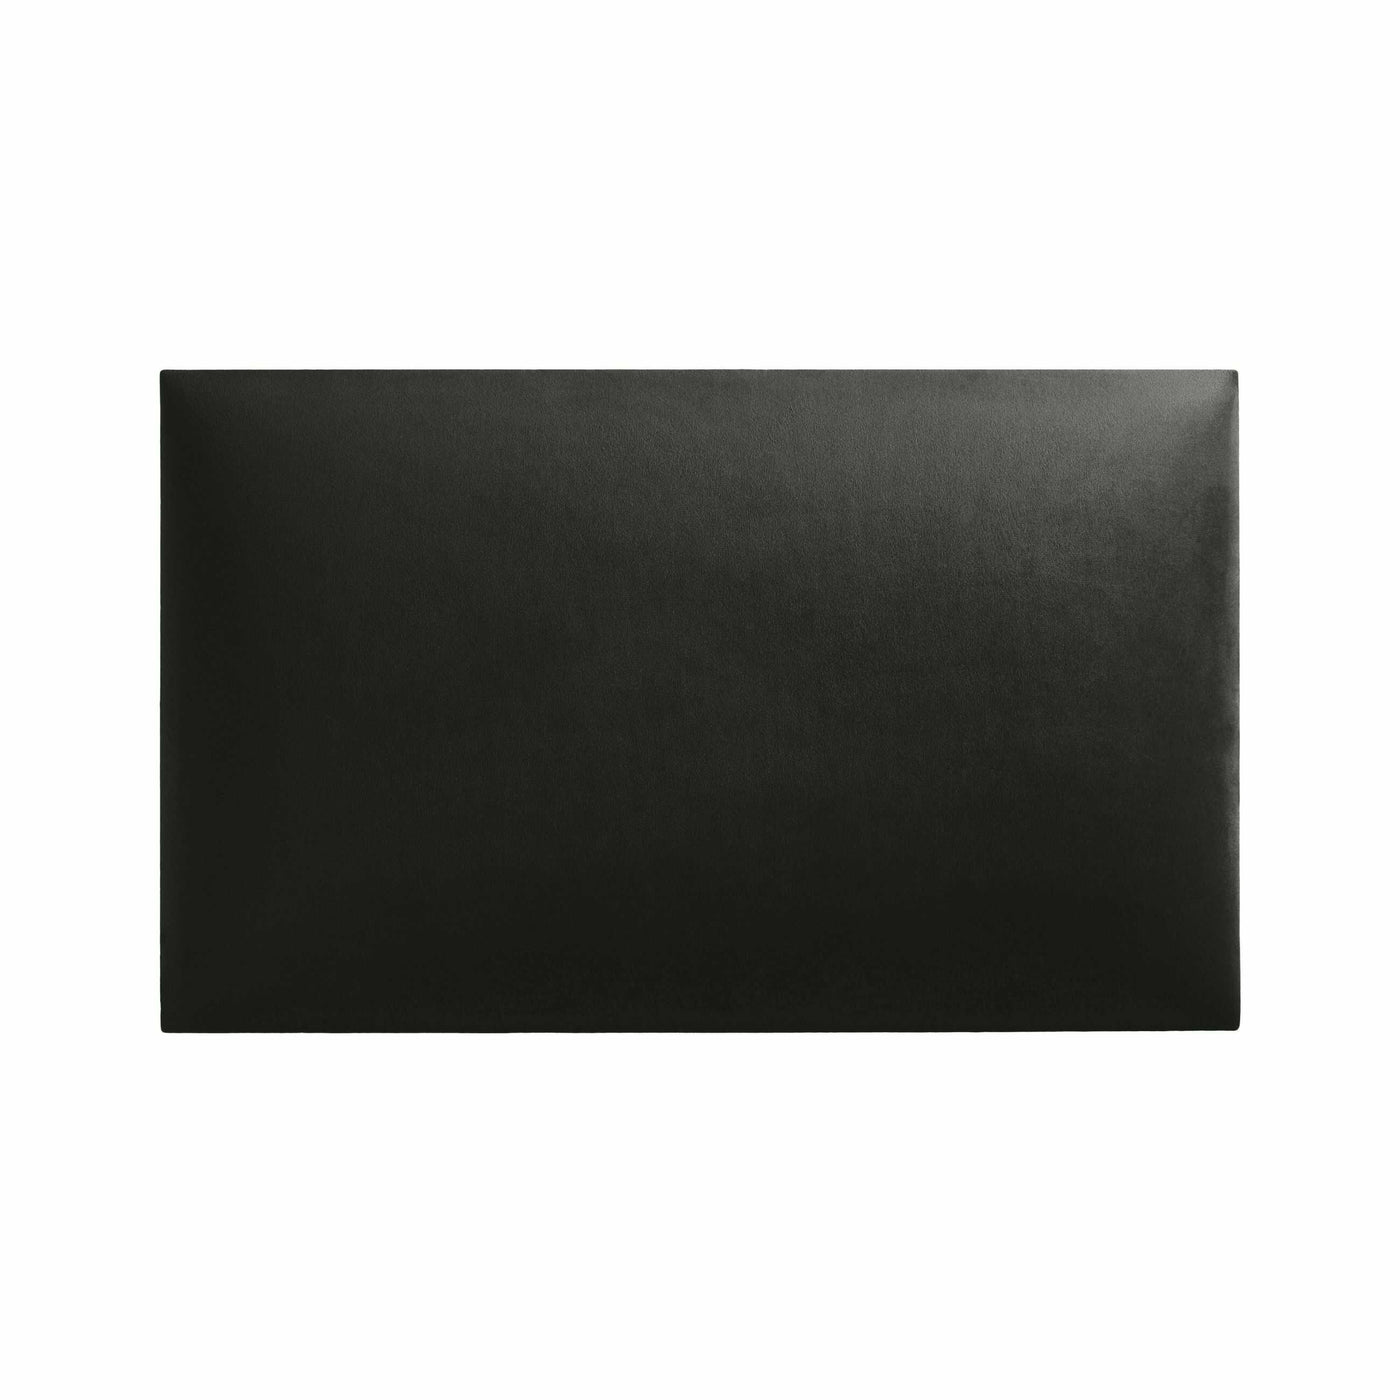 Rechteckiges Wandpolster 50x30 aus Riviera Samt Stoff in der Farbe Dunkel-Grau RV96